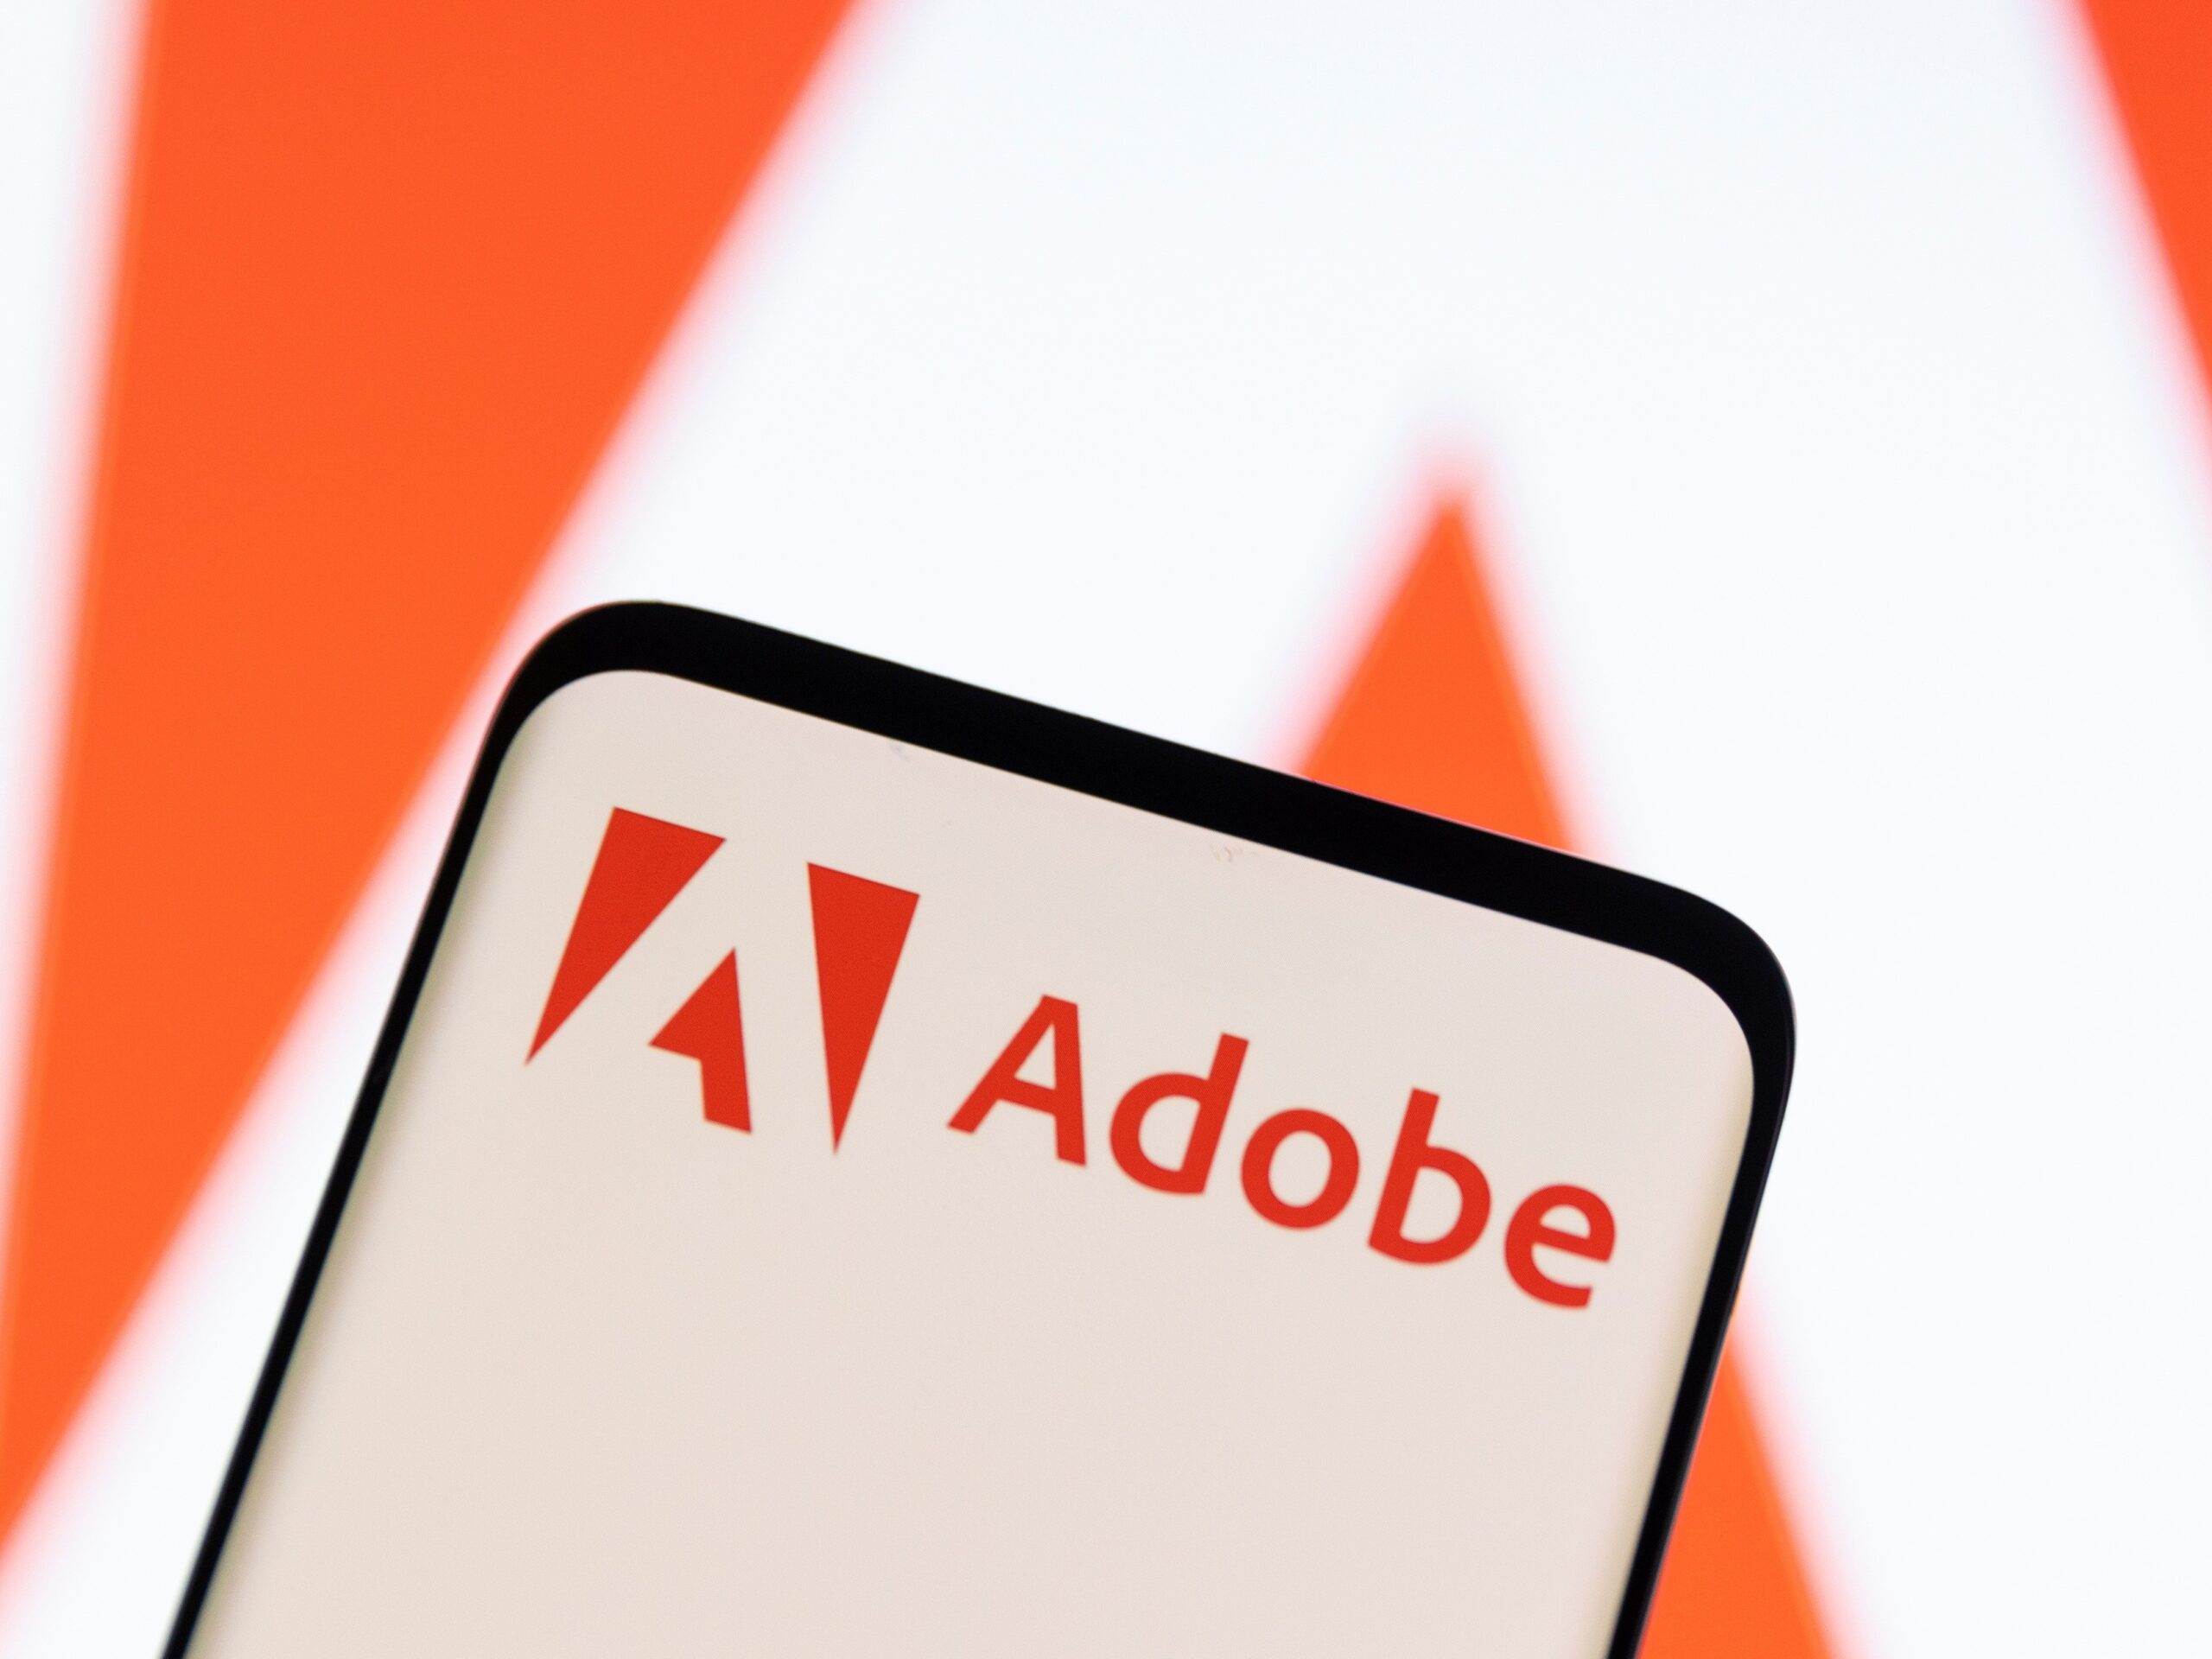 Zisk Adobe medziročné vzrástol o štvrtinu, výhľad však sklamal, akcie sa prepadli o 5%